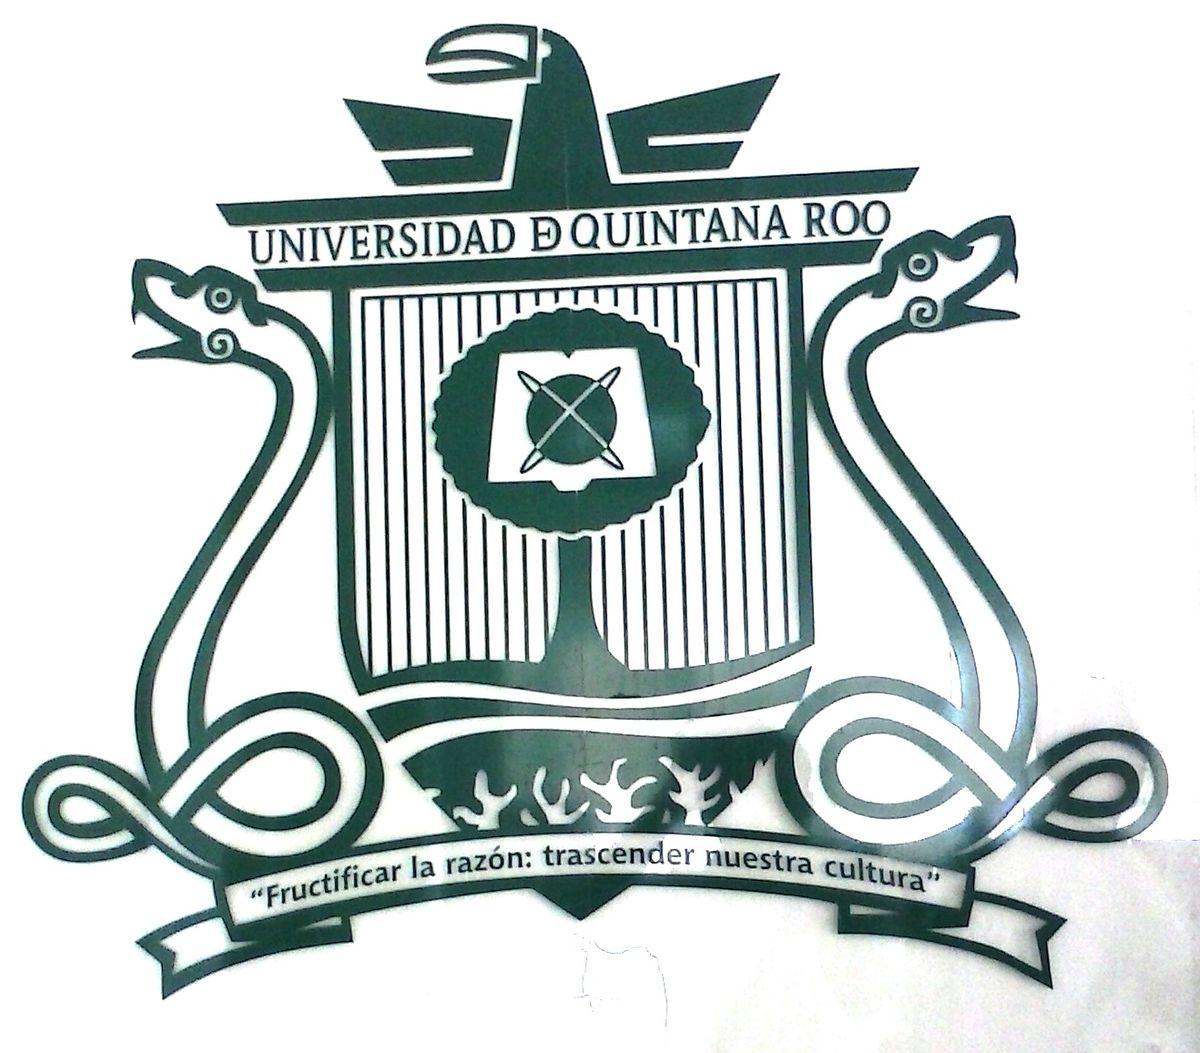 Roo Logo - University of Quintana Roo